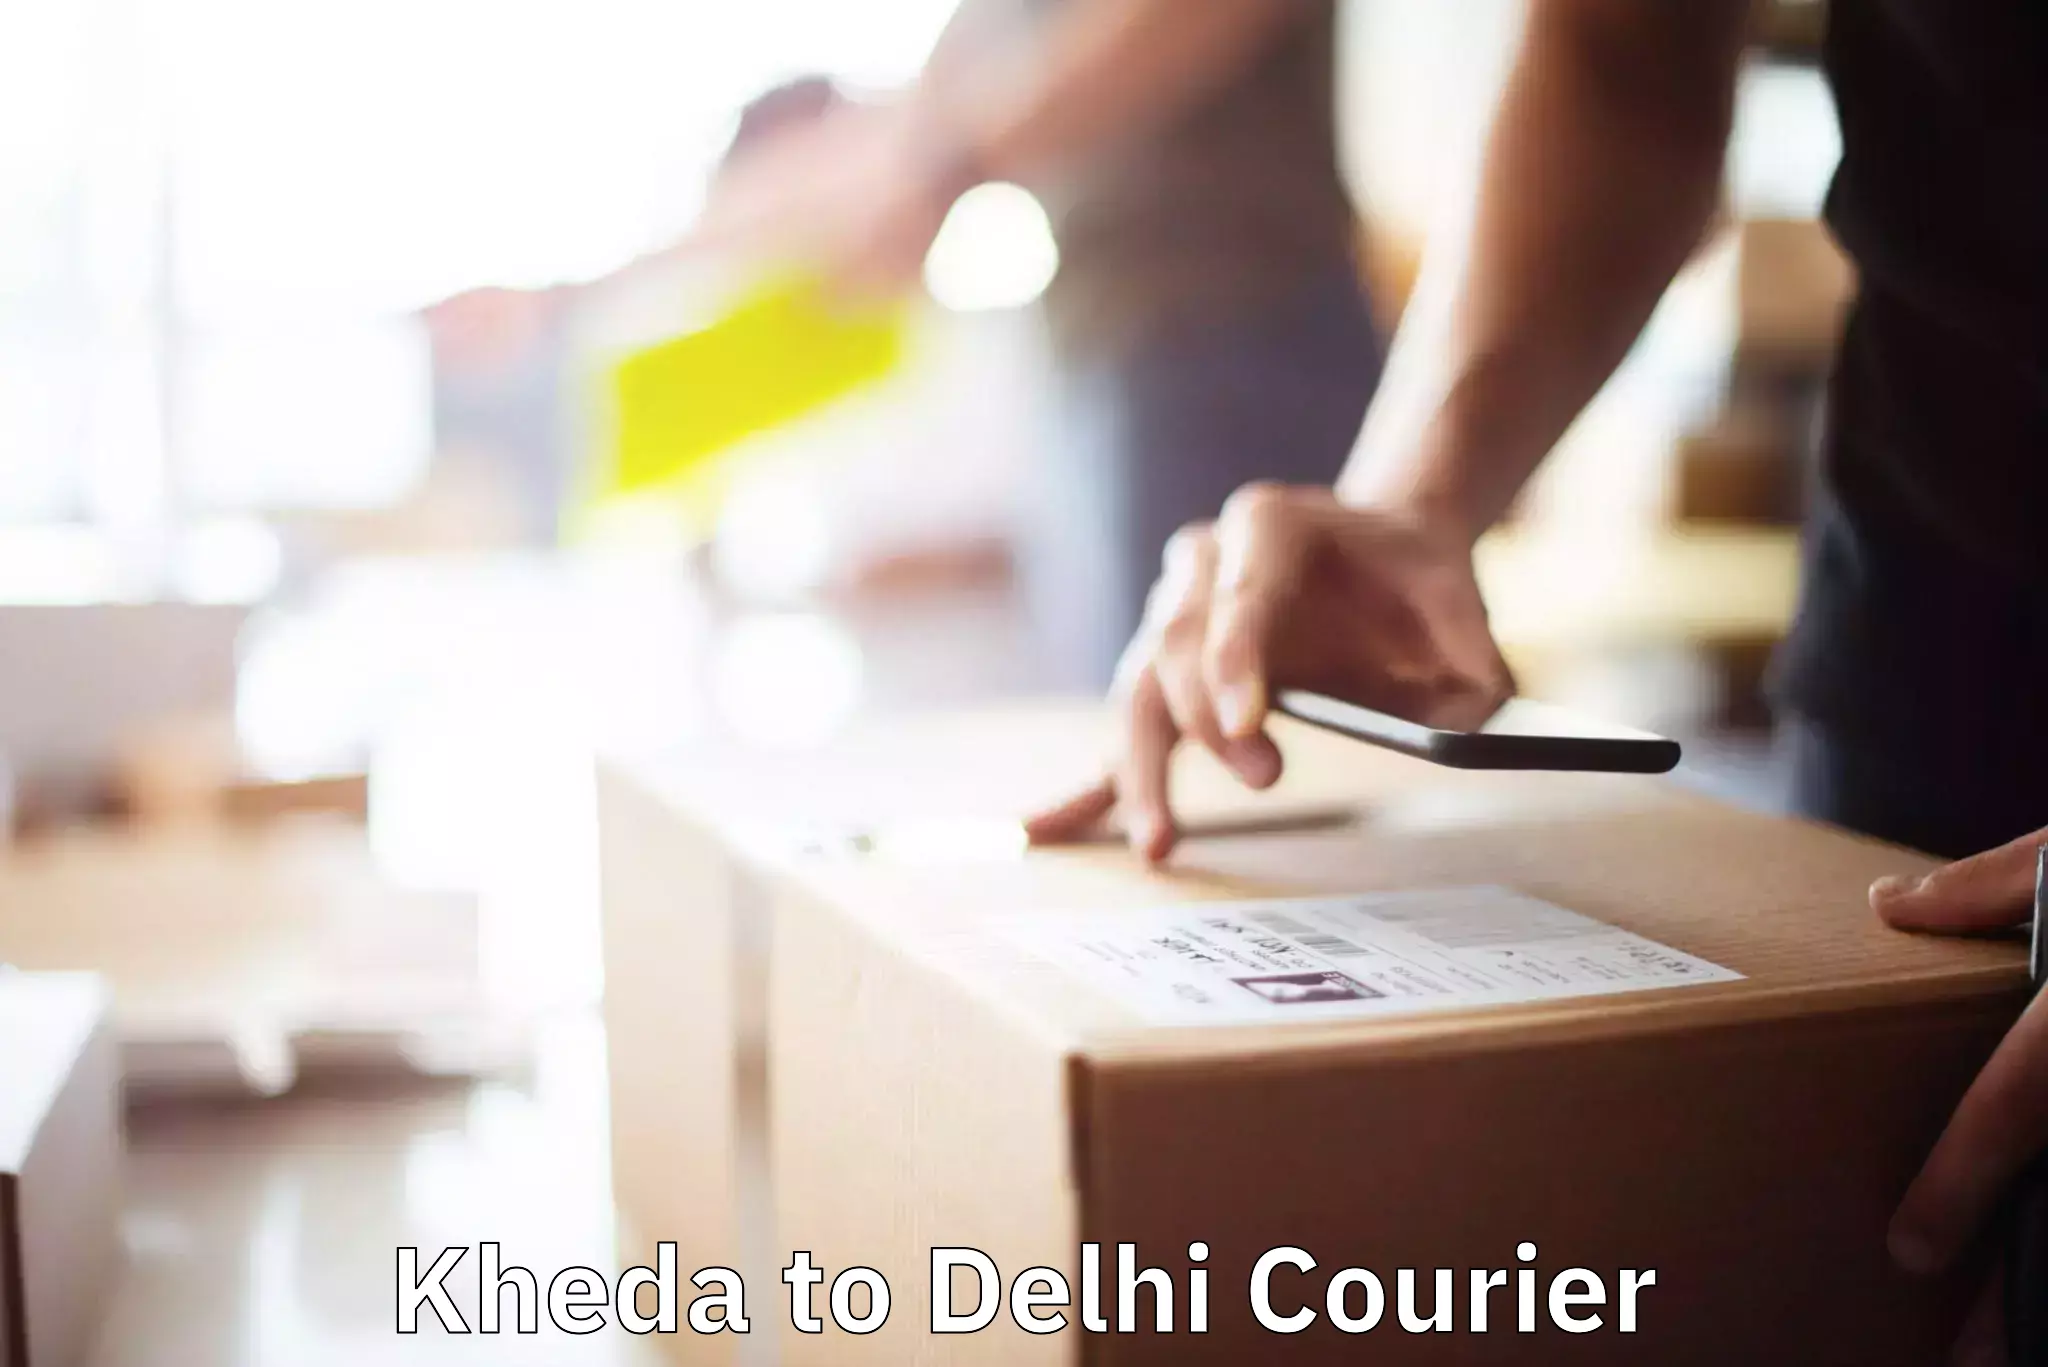 Furniture delivery service Kheda to Delhi